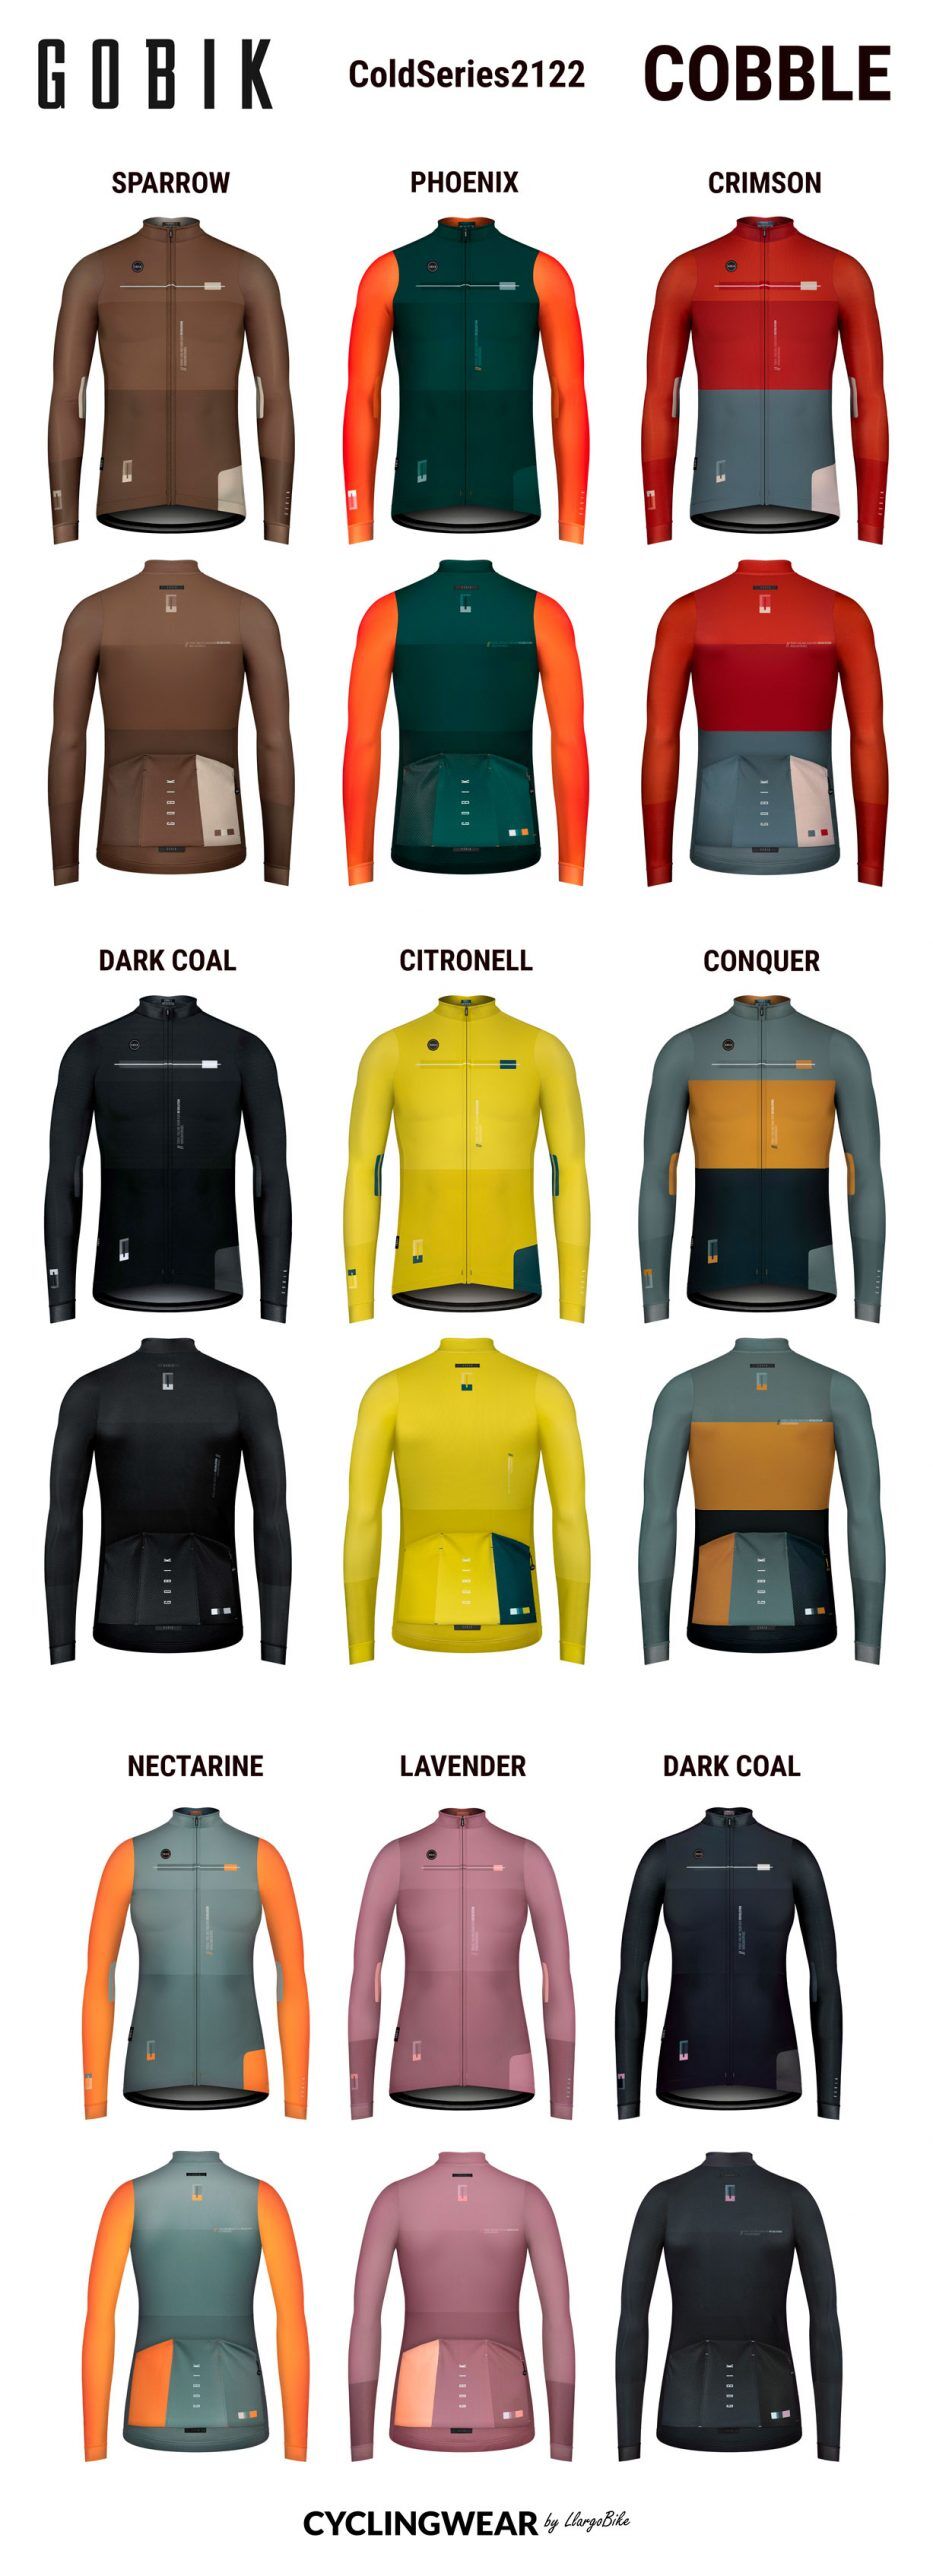 gobik-coldseries2122-cobble-cyclingwear-by-llargobike-v03